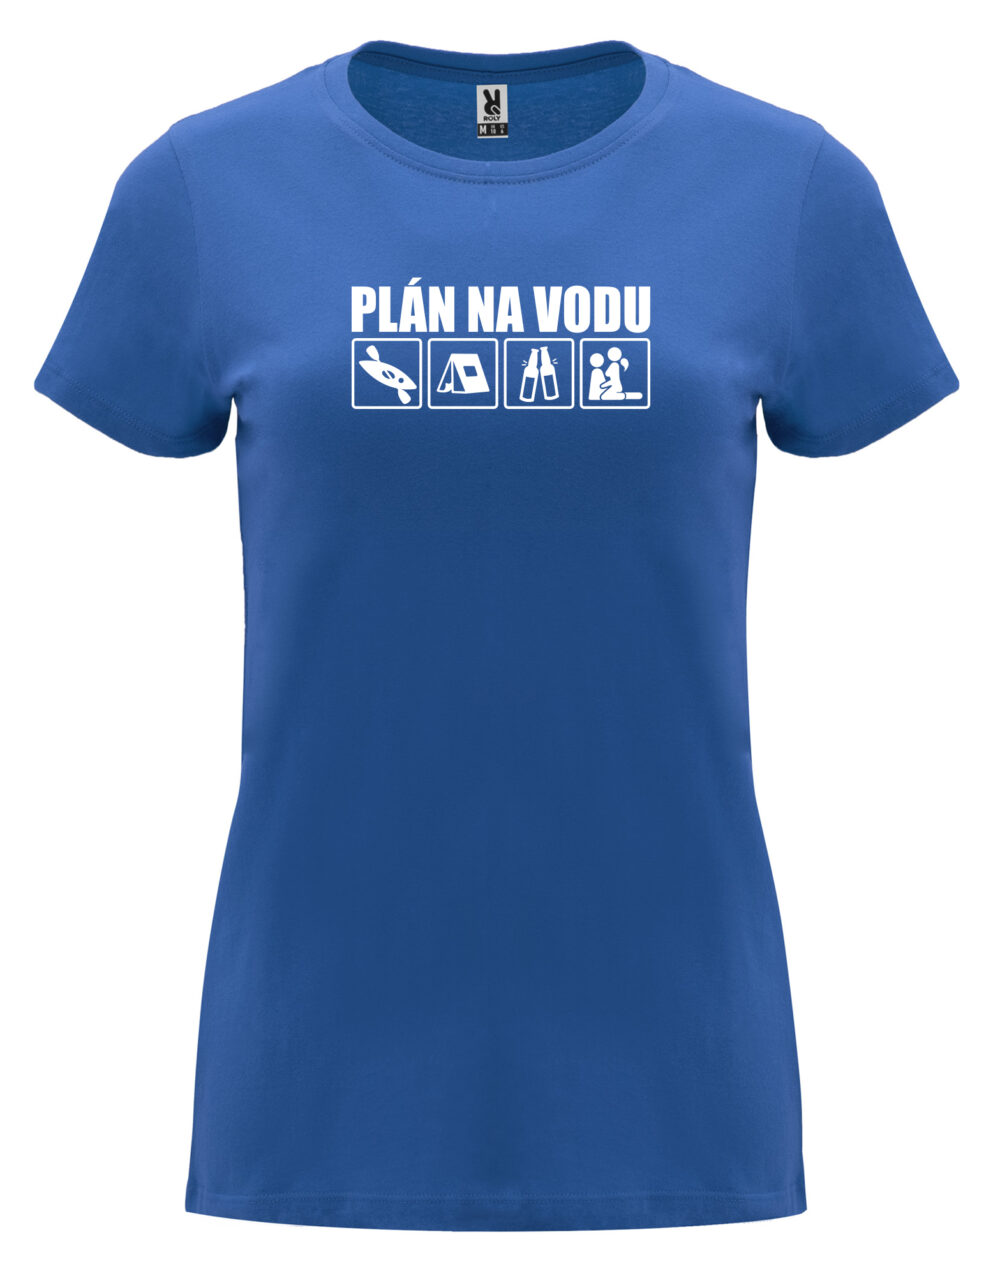 Dámské tričko s potiskem Plán na vodu královská modrá